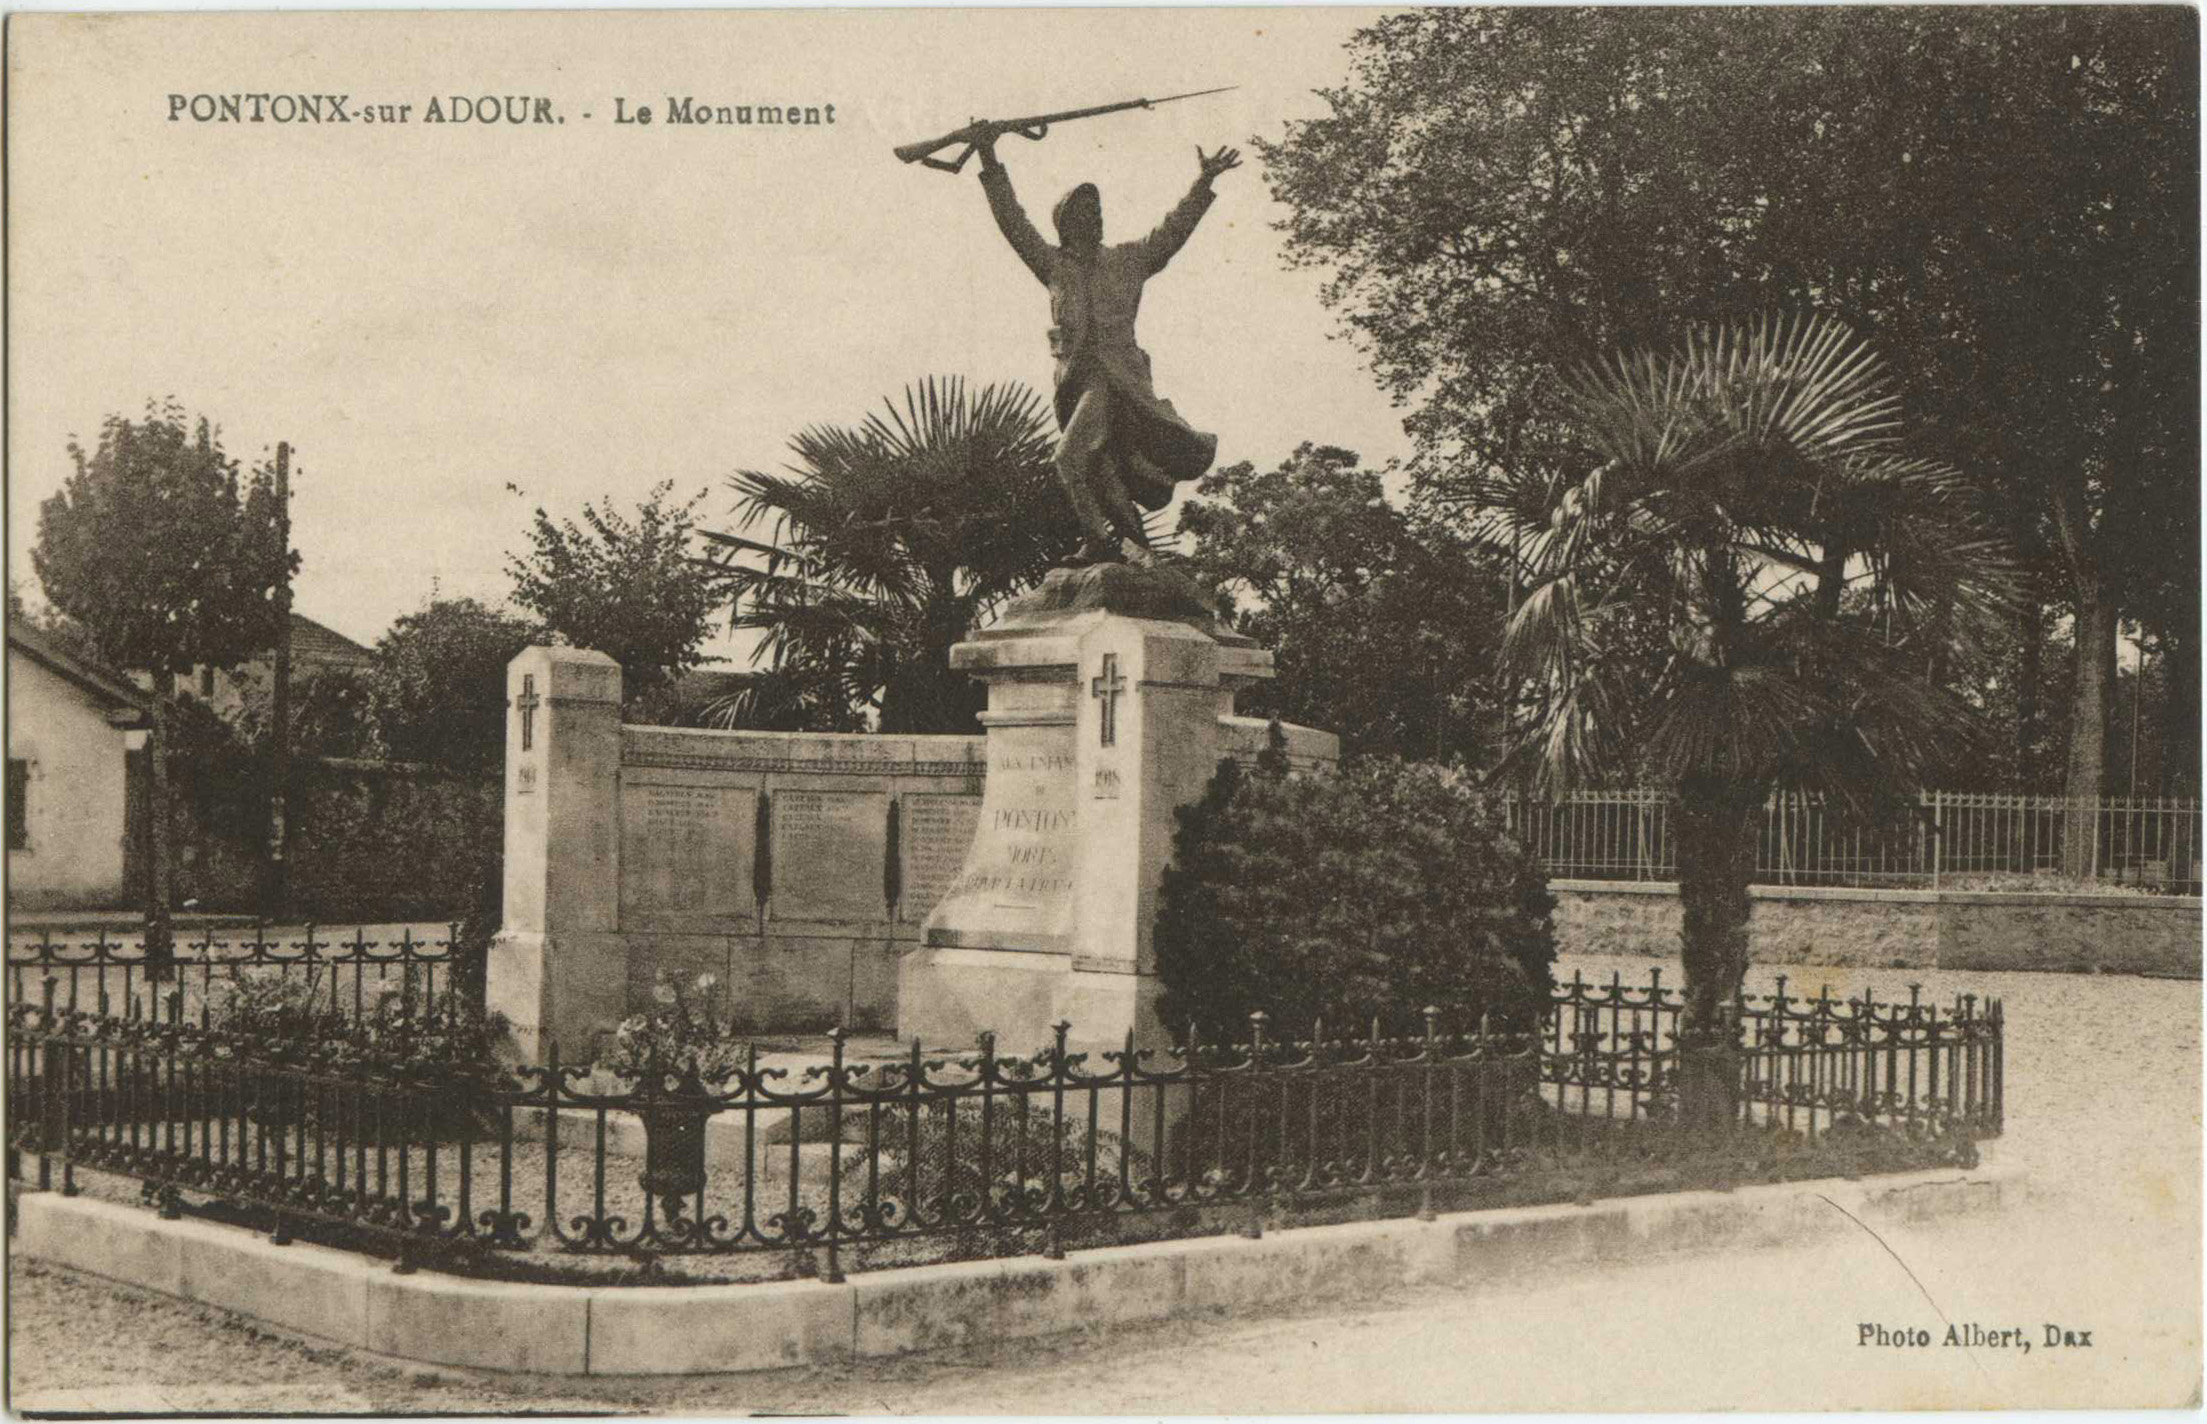 Pontonx-sur-l'Adour - Le Monument